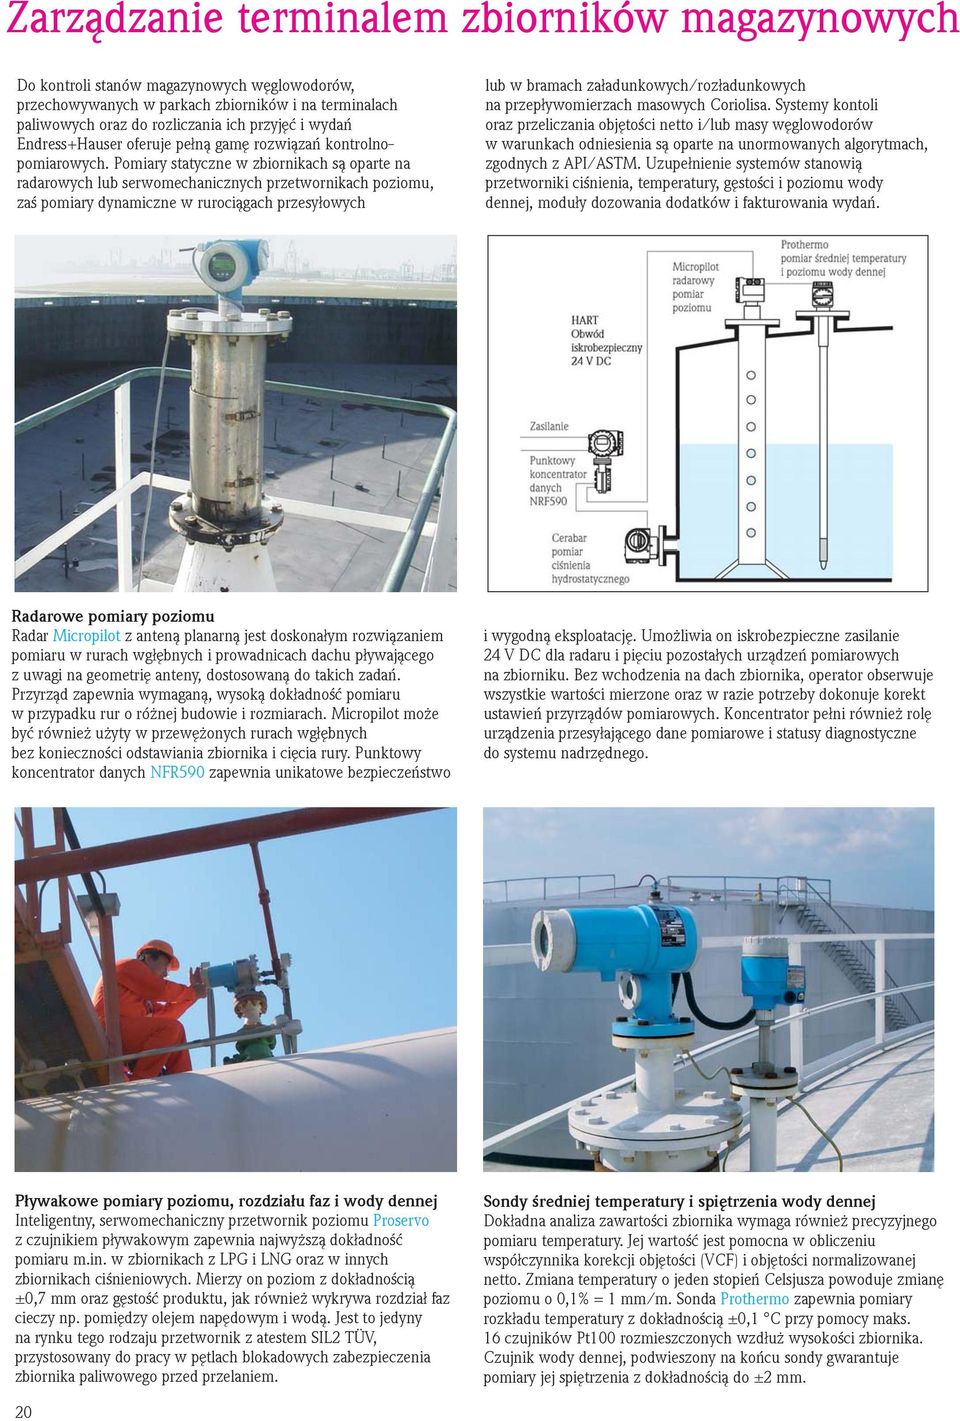 Pomiary statyczne w zbiornikach są oparte na radarowych lub serwomechanicznych przetwornikach poziomu, zaś pomiary dynamiczne w rurociągach przesyłowych lub w bramach załadunkowych/rozładunkowych na